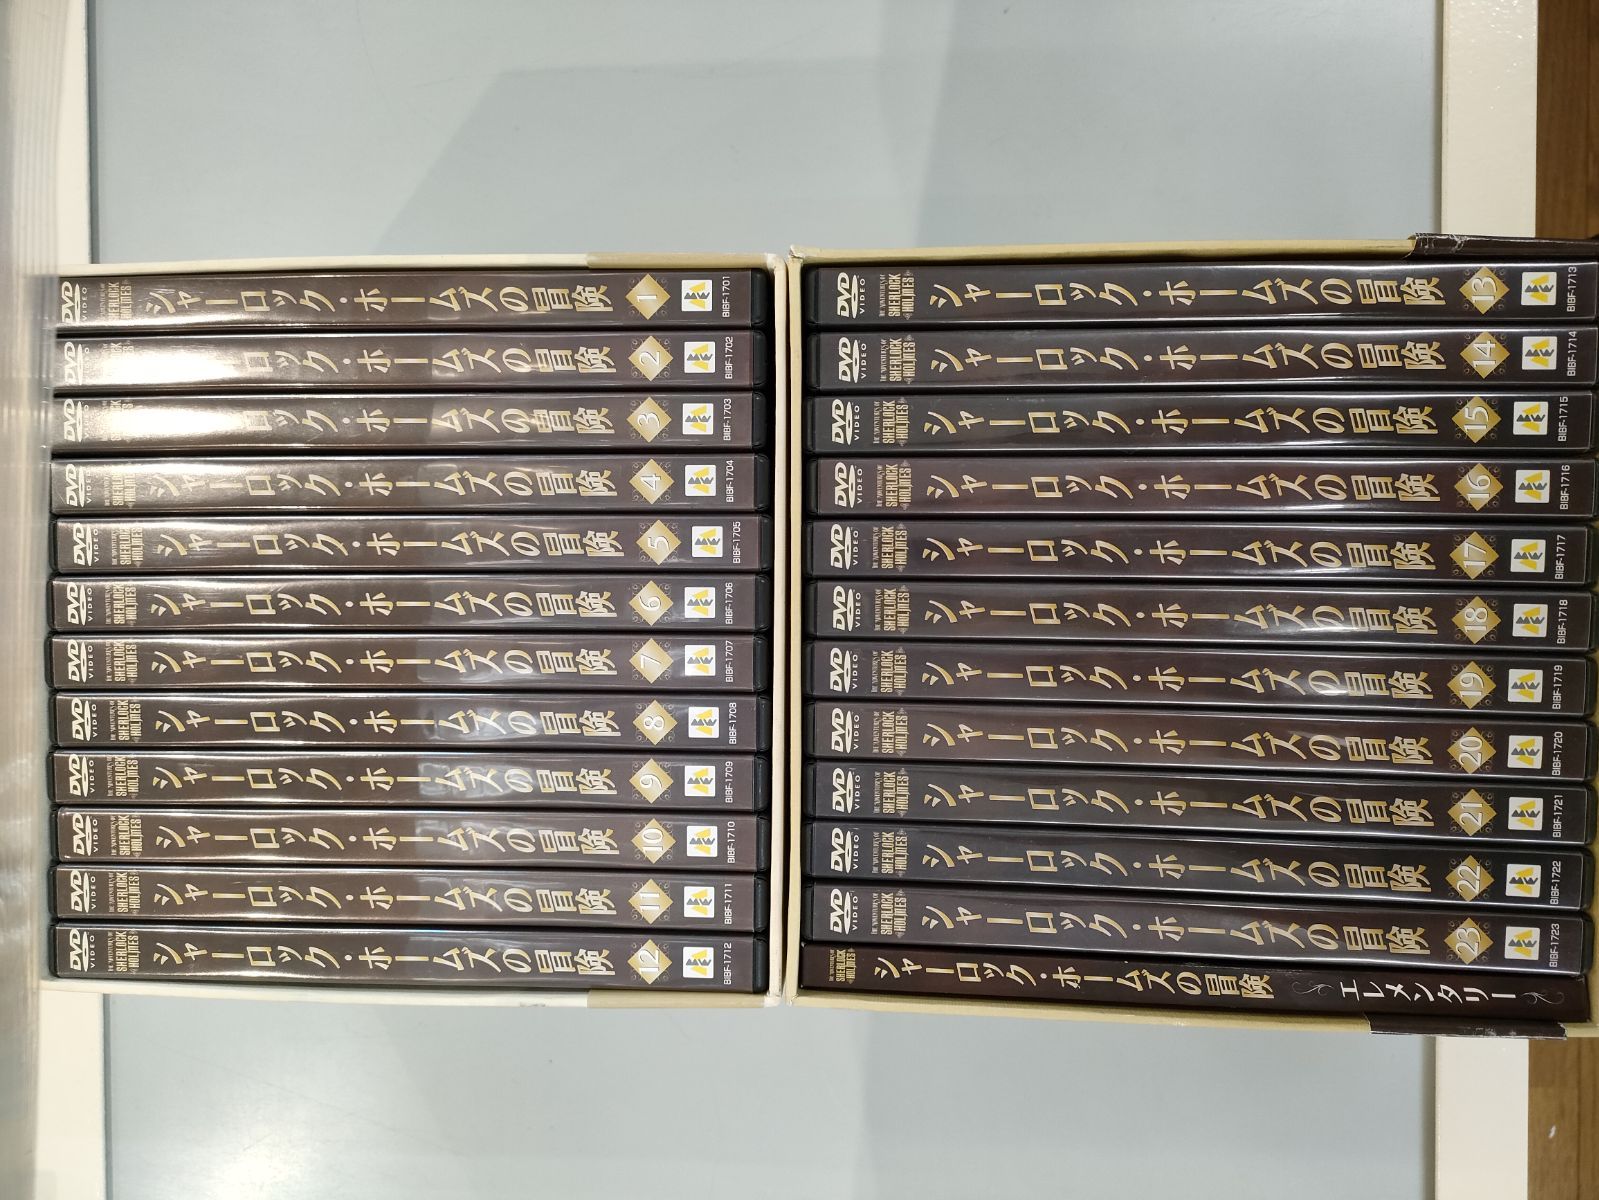 シャーロックホームズの冒険 DVD BOX 1+2 library.umsida.ac.id